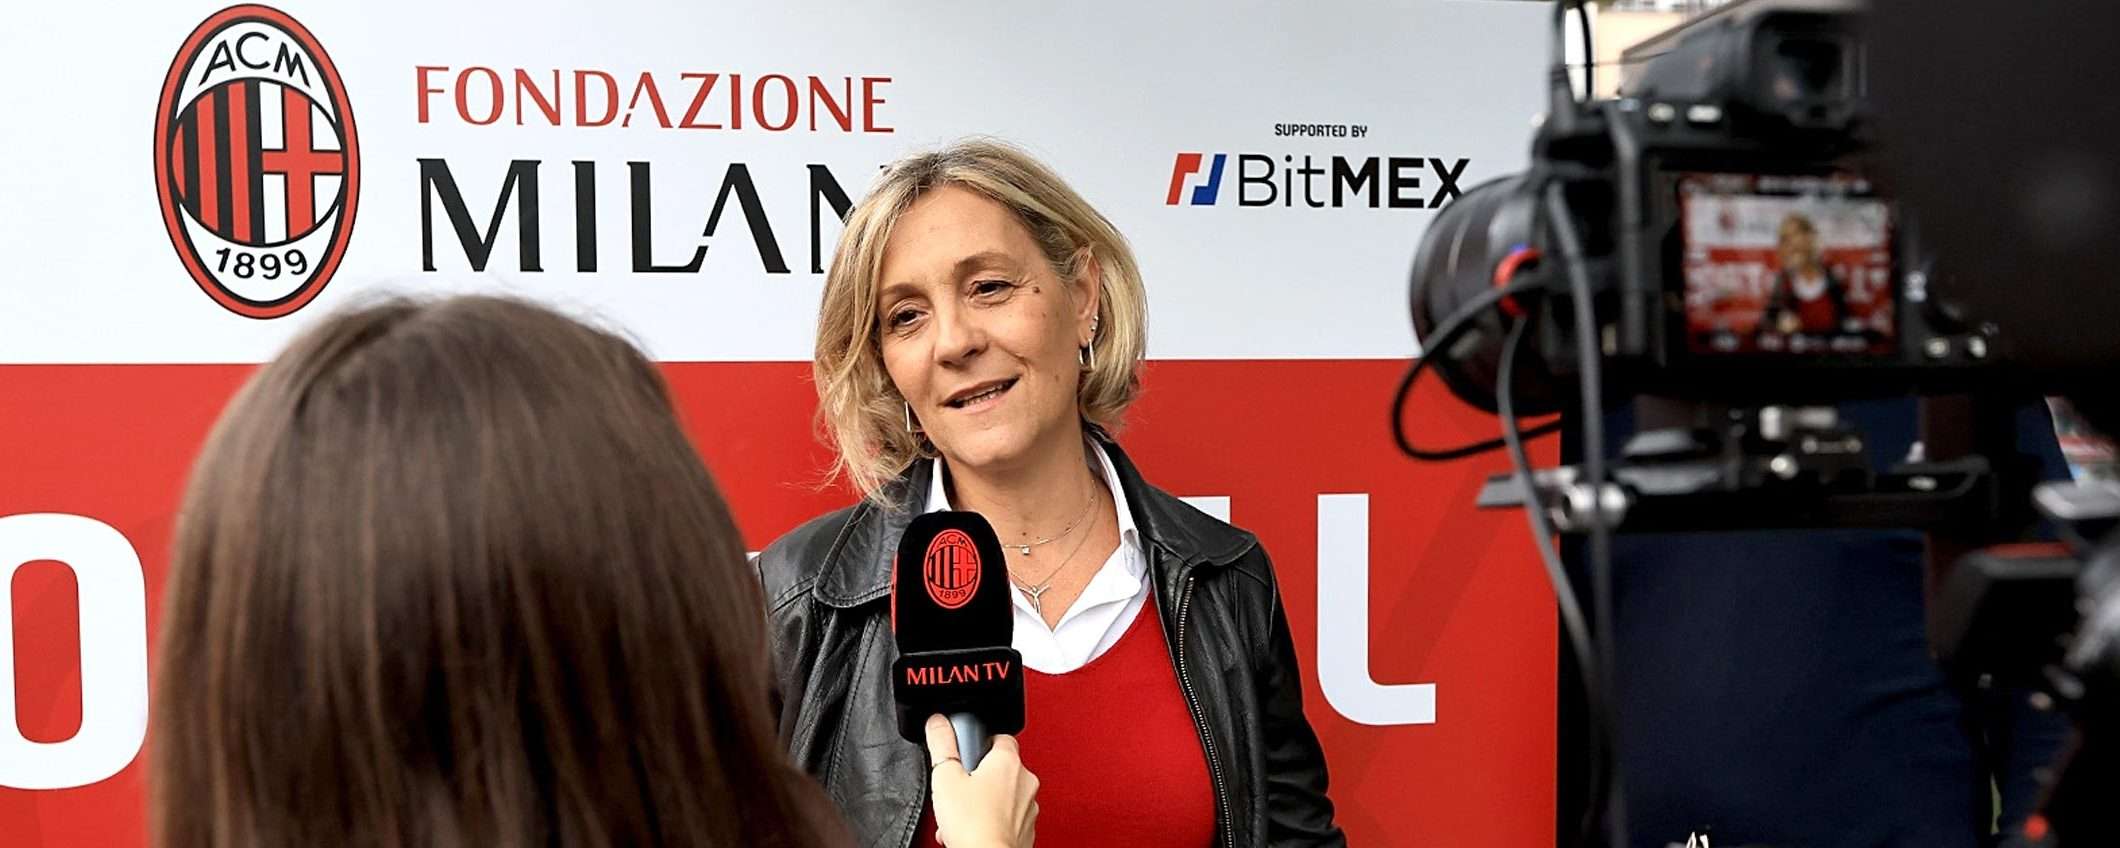 BitMEX per i progetti sociali di Fondazione Milan